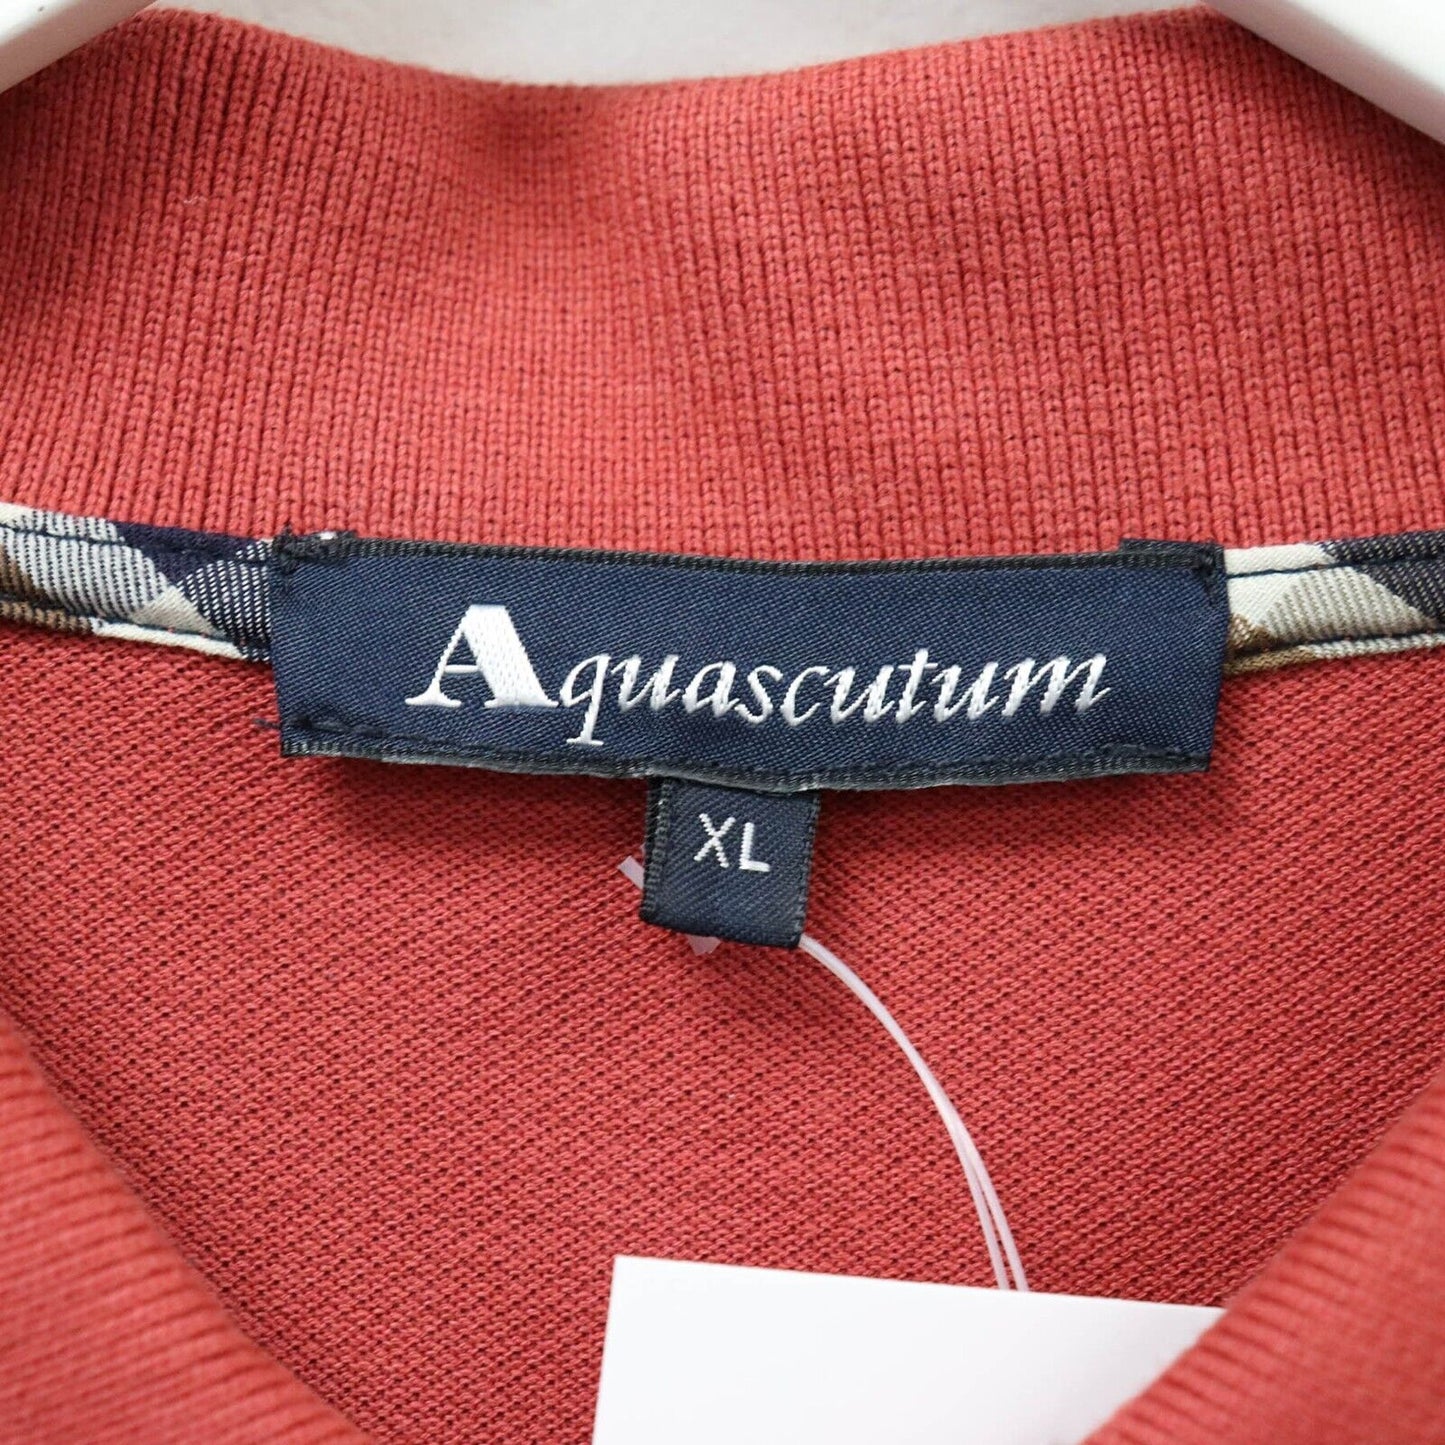 Aquascutum Polo Shirt Size XL